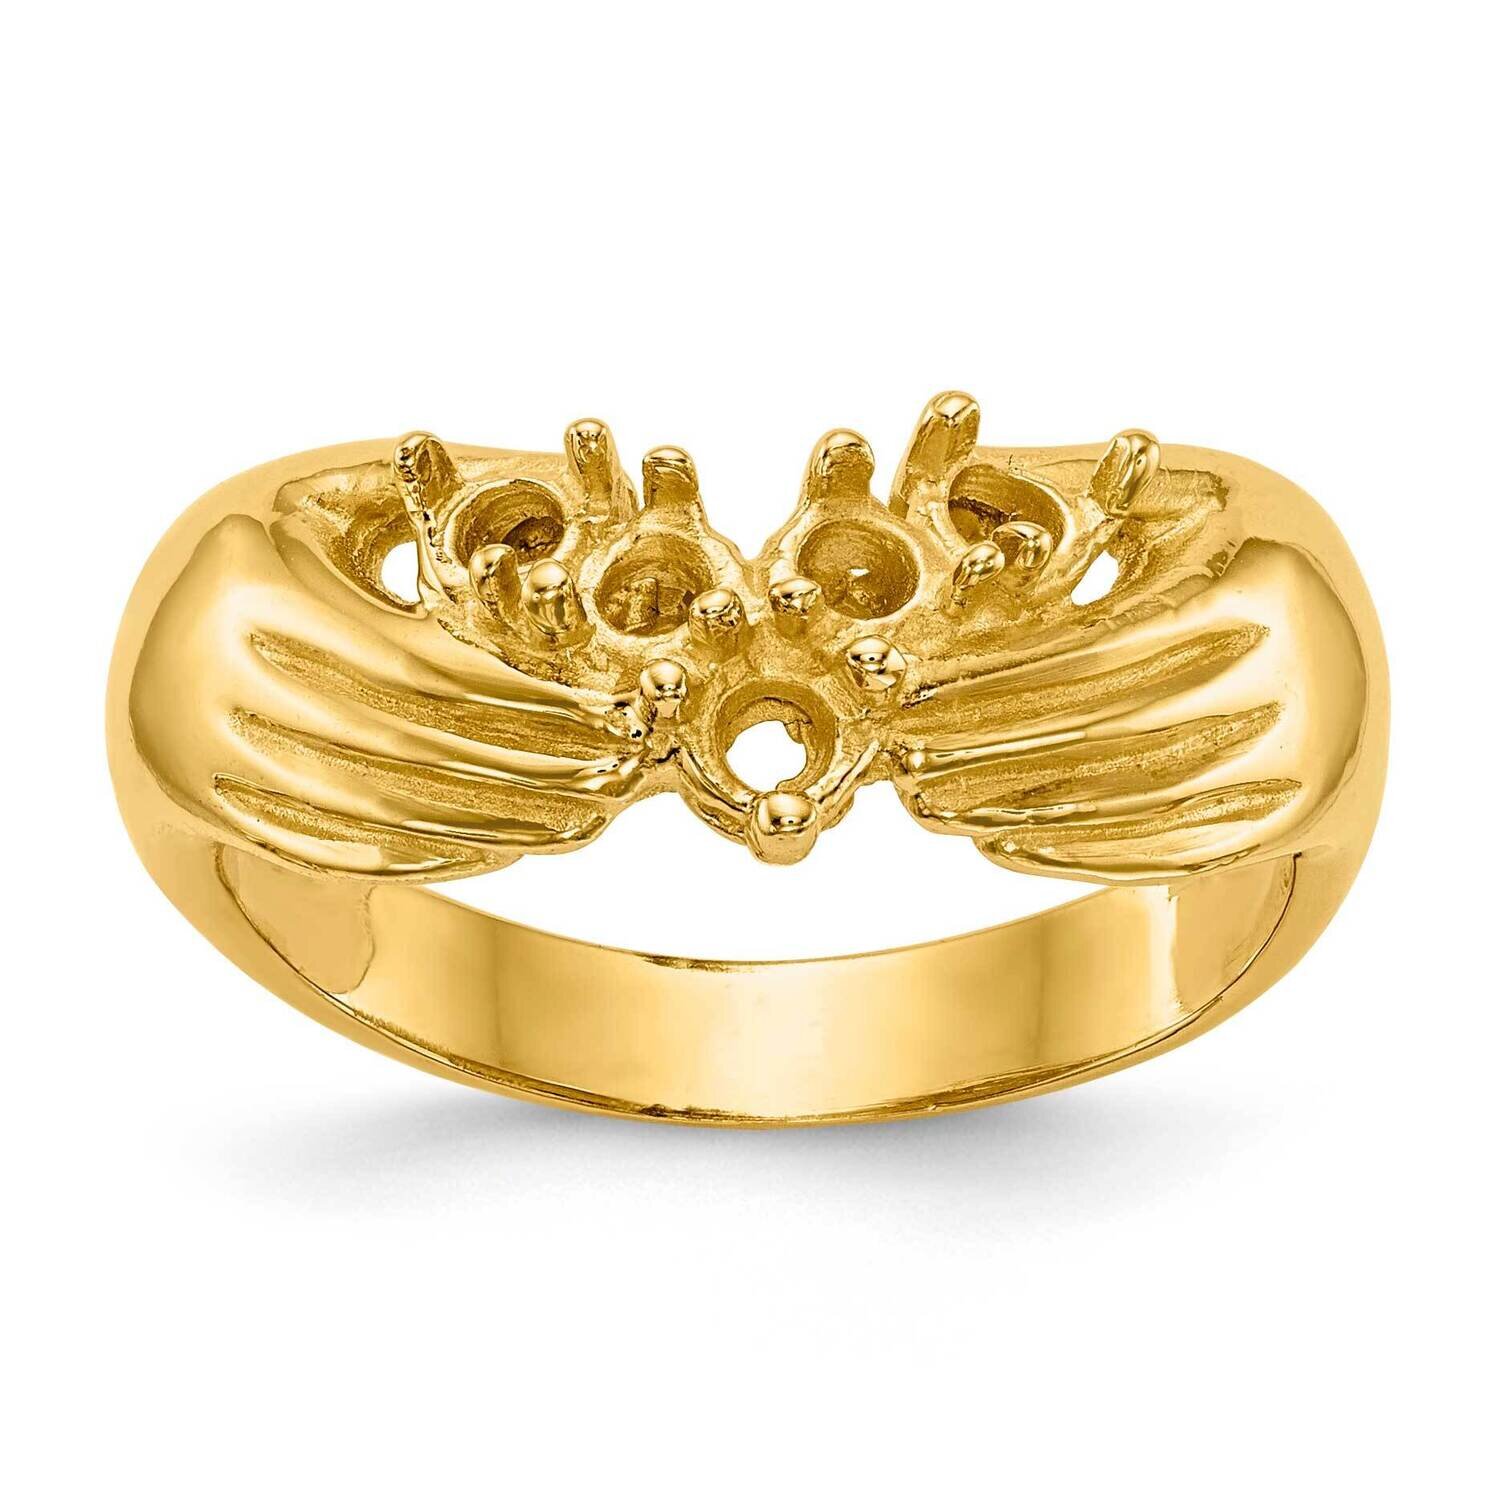 5 Stone Family Ring Mounting 14k Gold XMR51/5-7